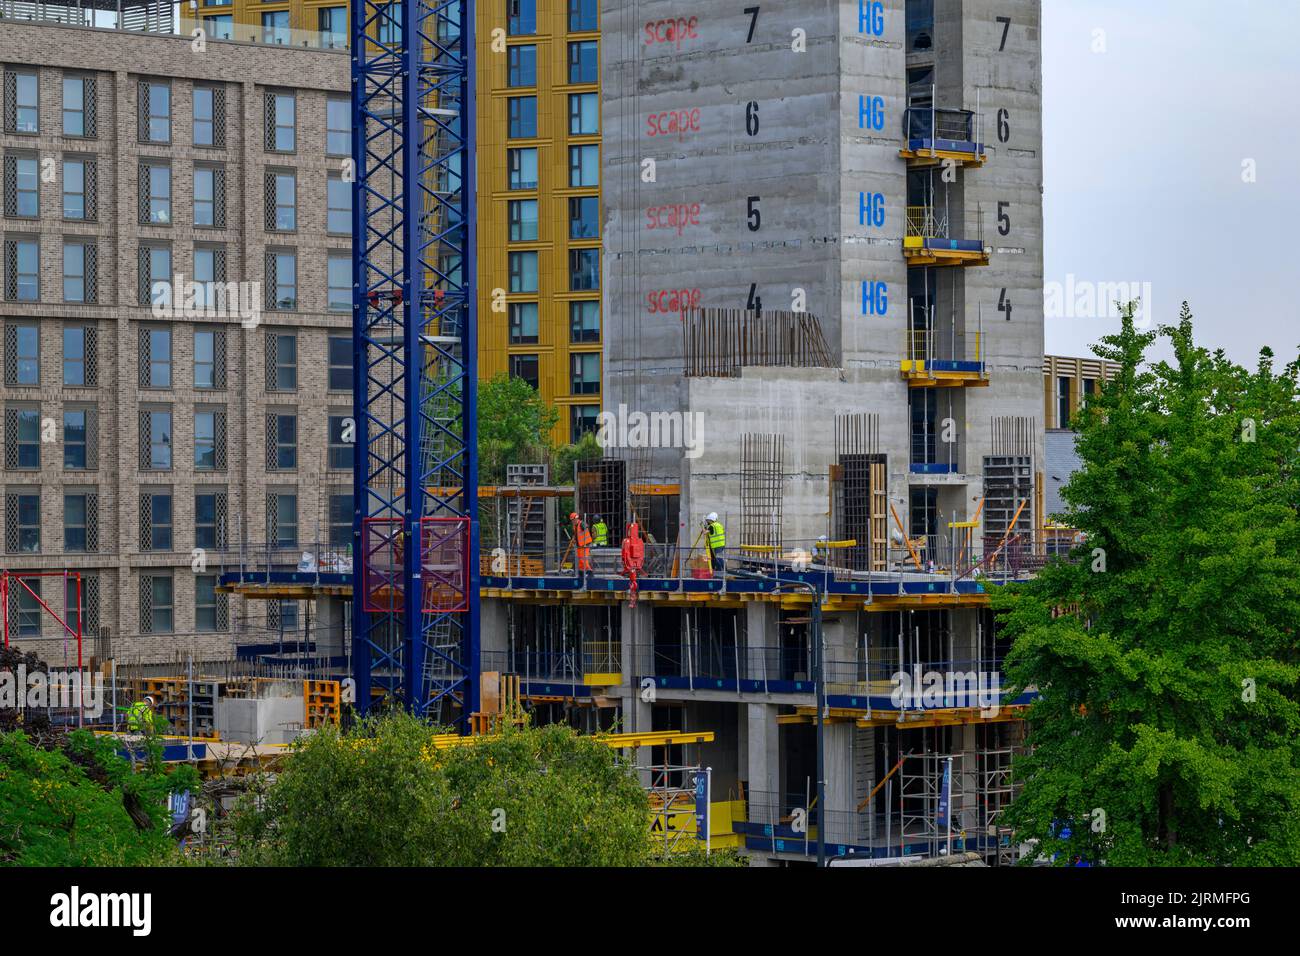 Projet de bloc de tour urbain (aménagement moderne d'appartements de plusieurs étages, travail des gens de métier, mât de grue) - Leeds, West Yorkshire, Angleterre, Royaume-Uni. Banque D'Images